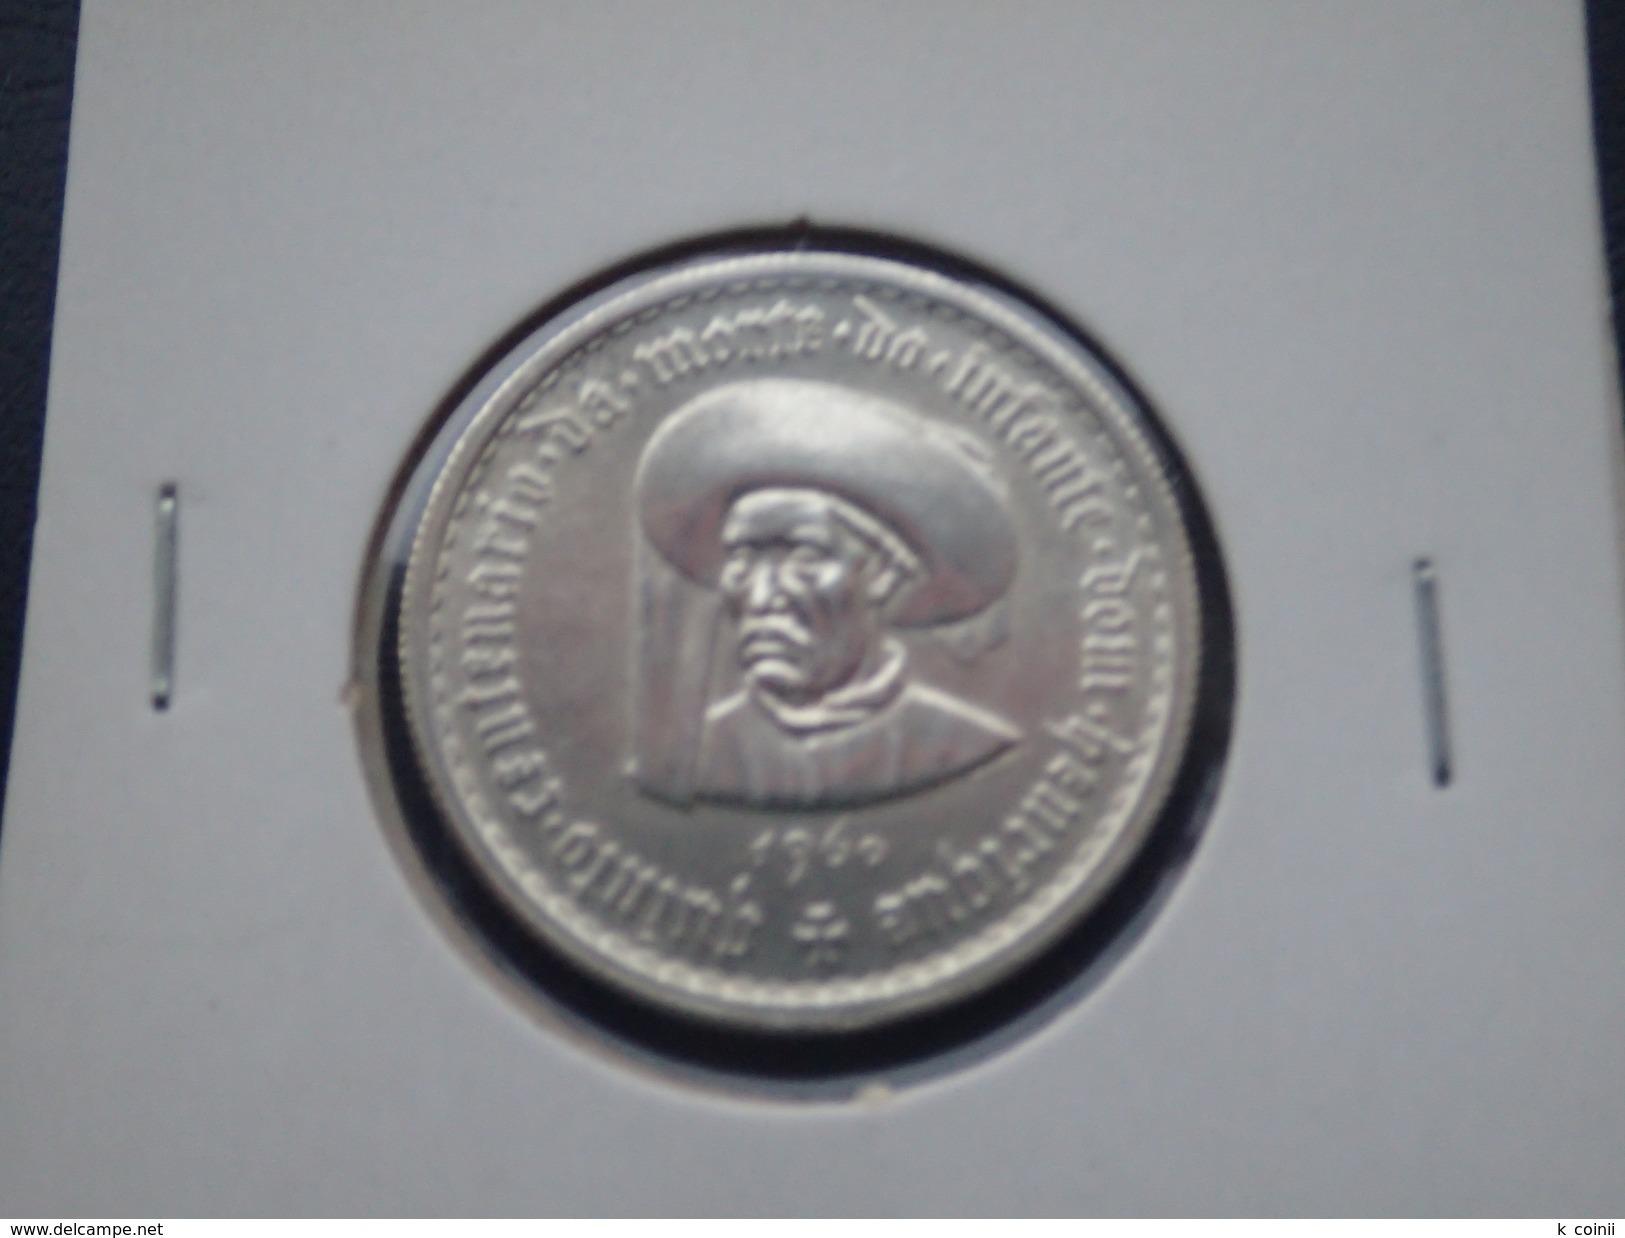 Portugal - 5 Escudos (5$00) 1960 Infante D. Henrique Silver - UNC - Portogallo